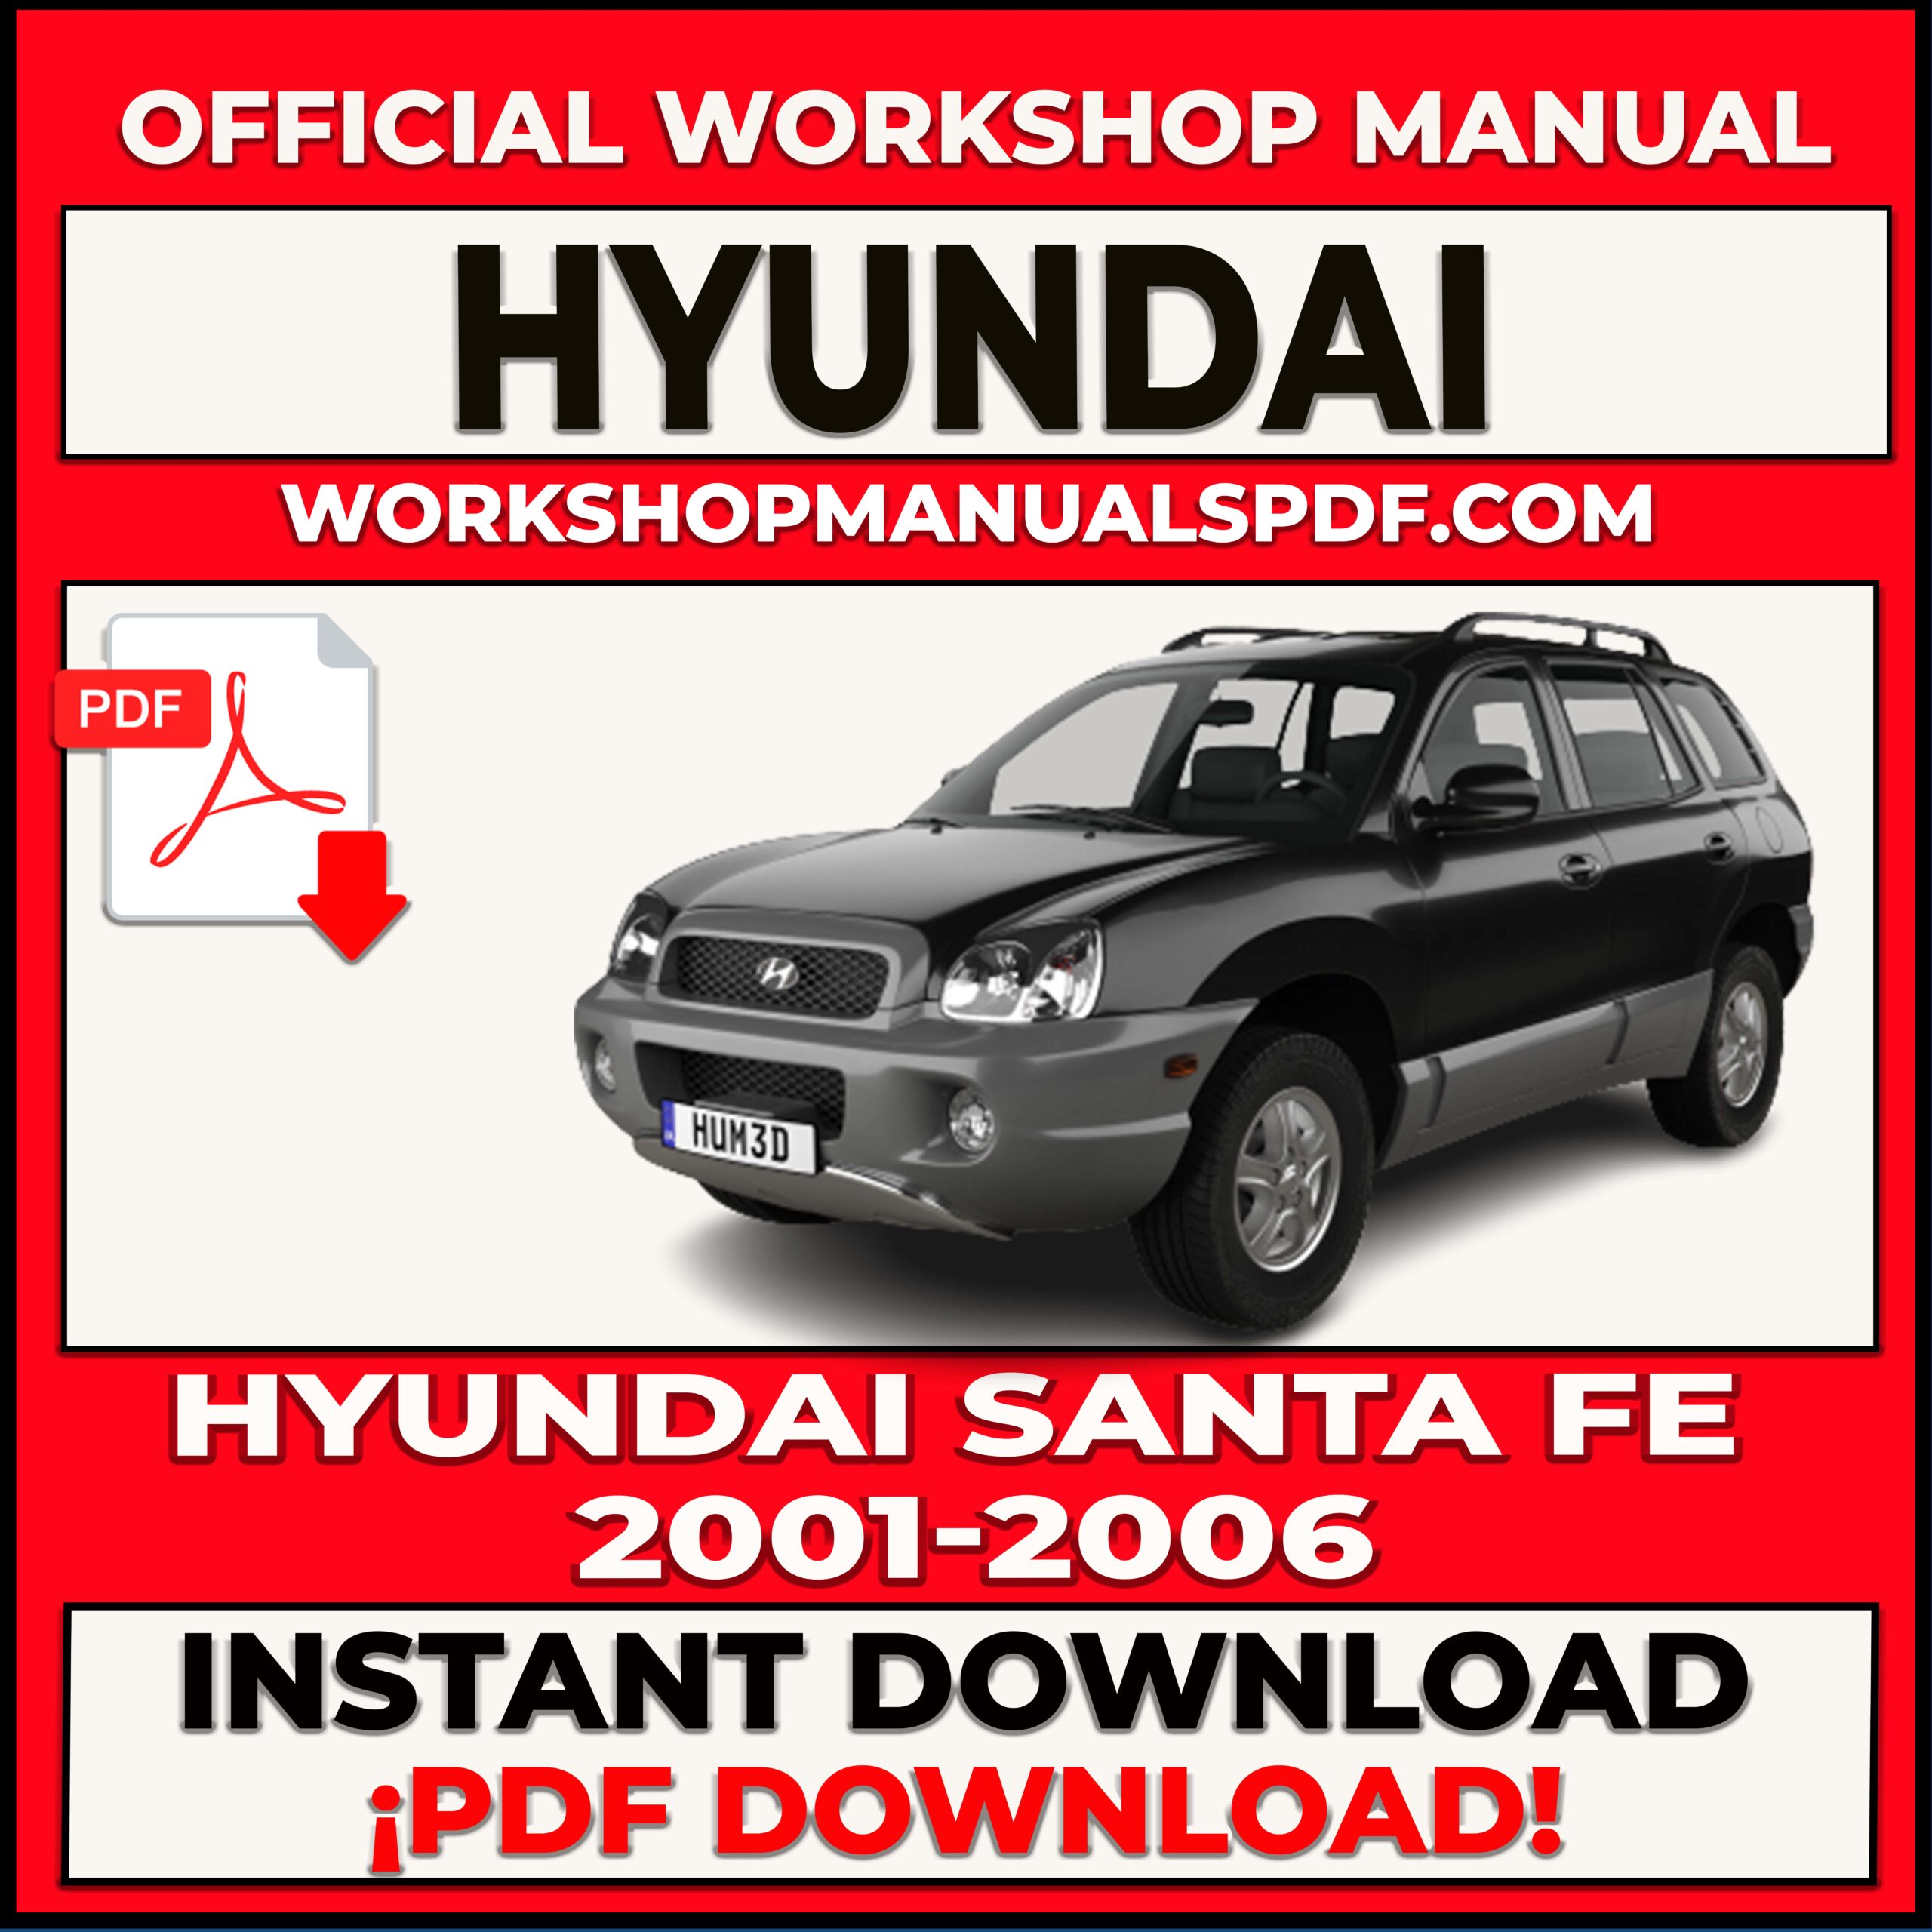 Hyundai Santa Fe 2001-2006 Workshop Repair Manual